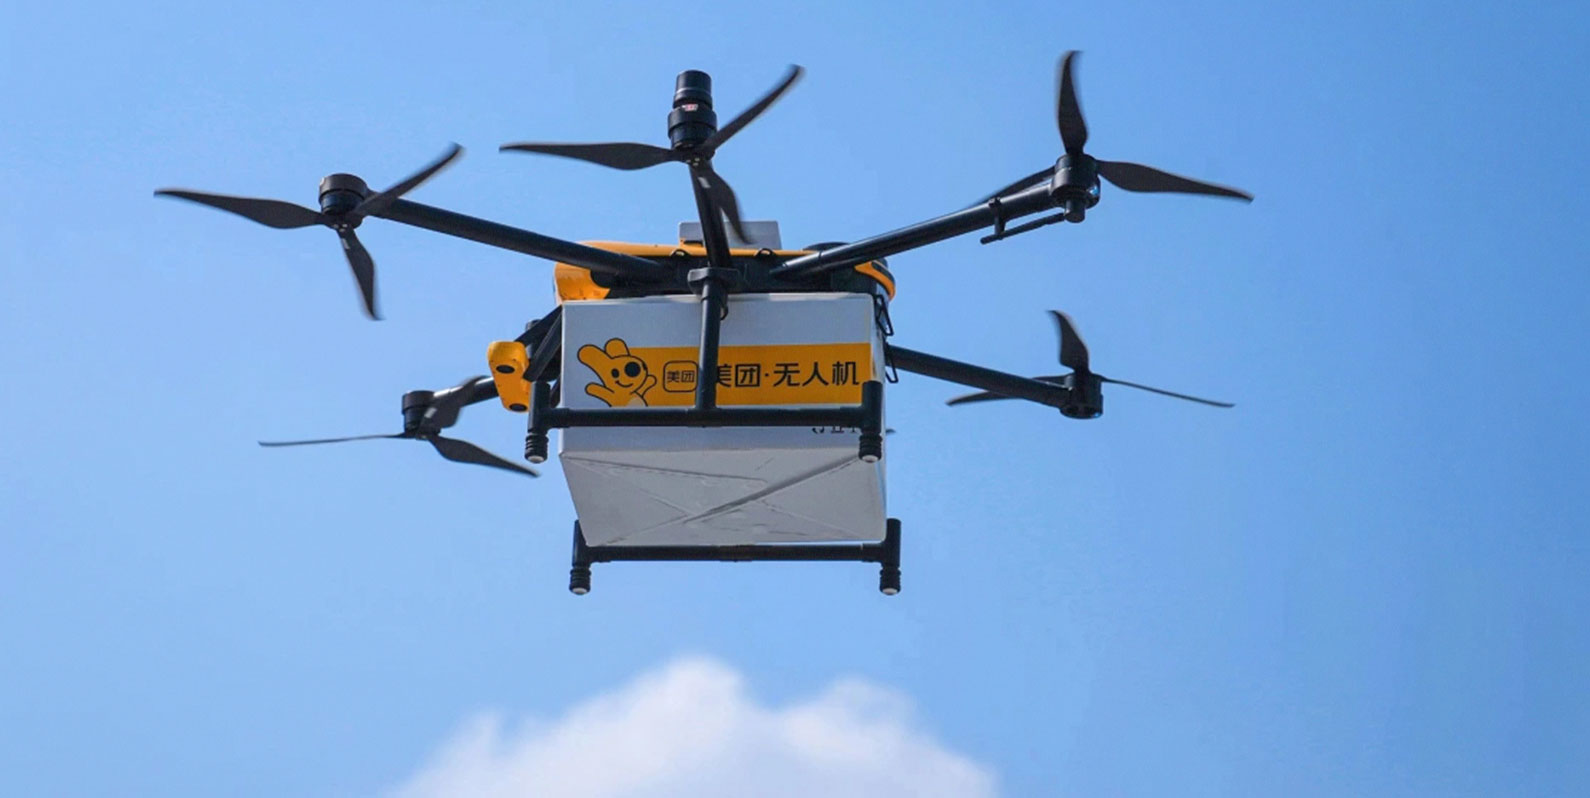 Entrega de comida por drones faz parte do dia a dia em Shenzhen